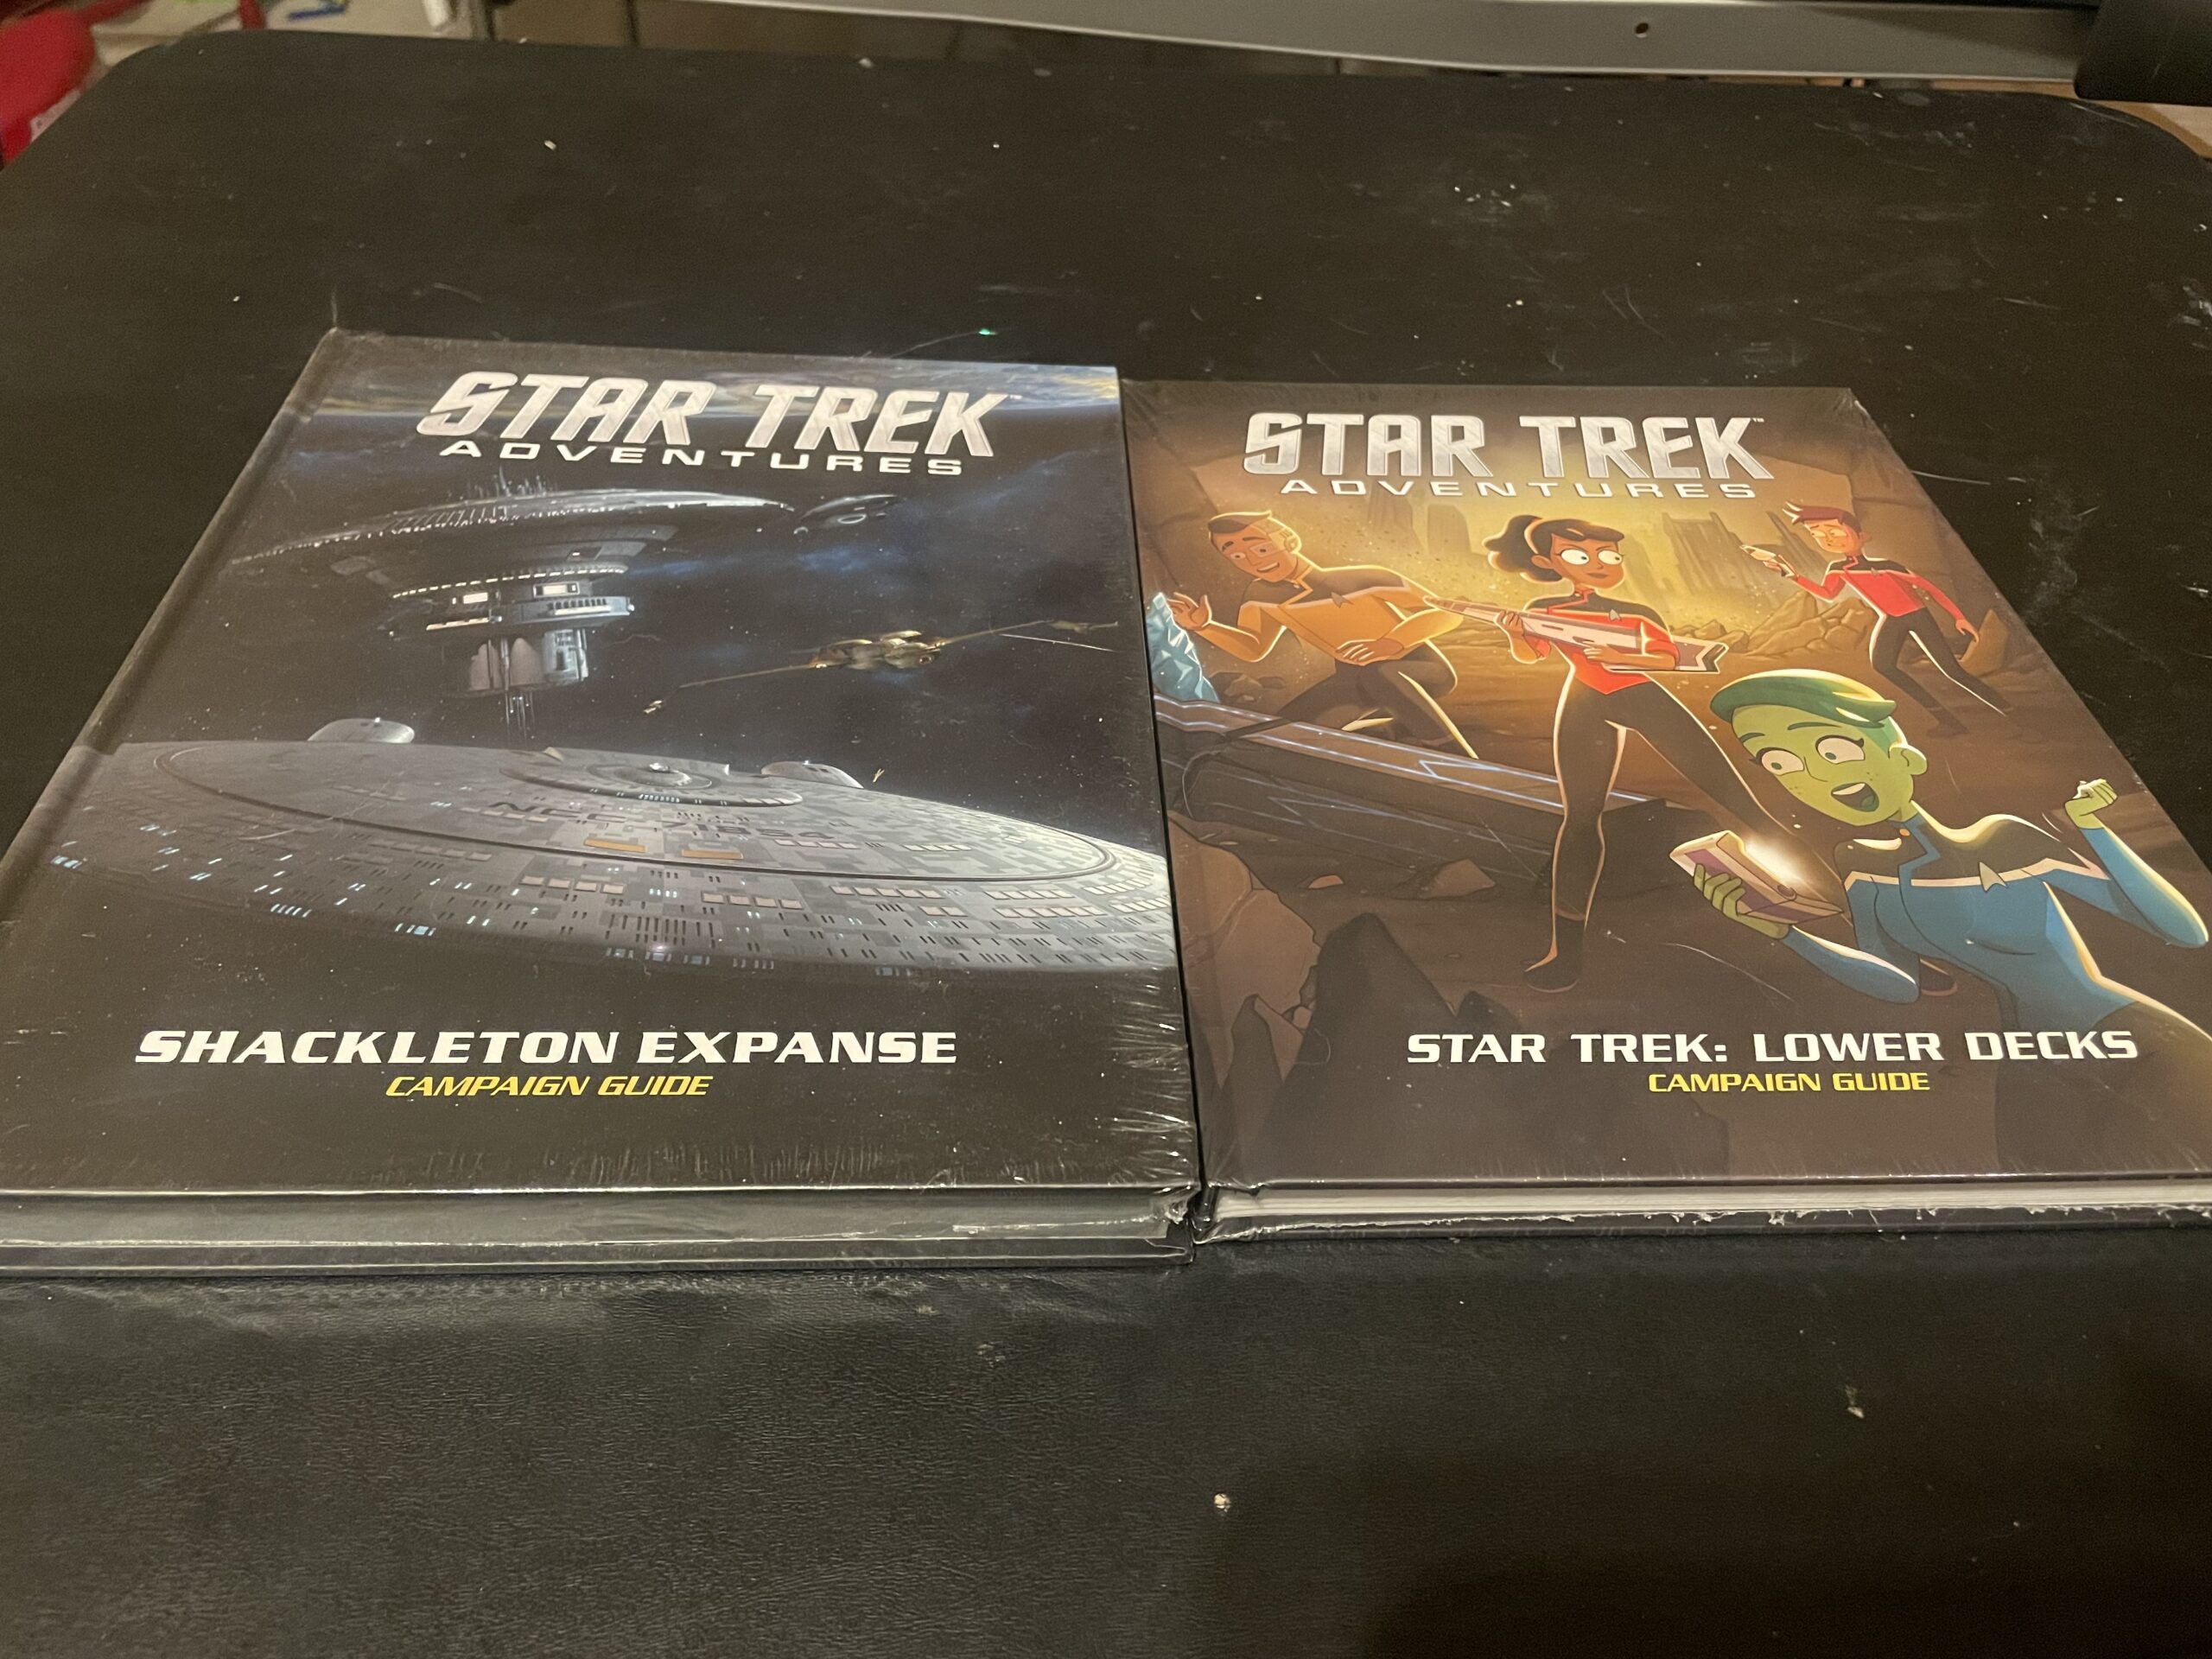 Star Trek Adventures